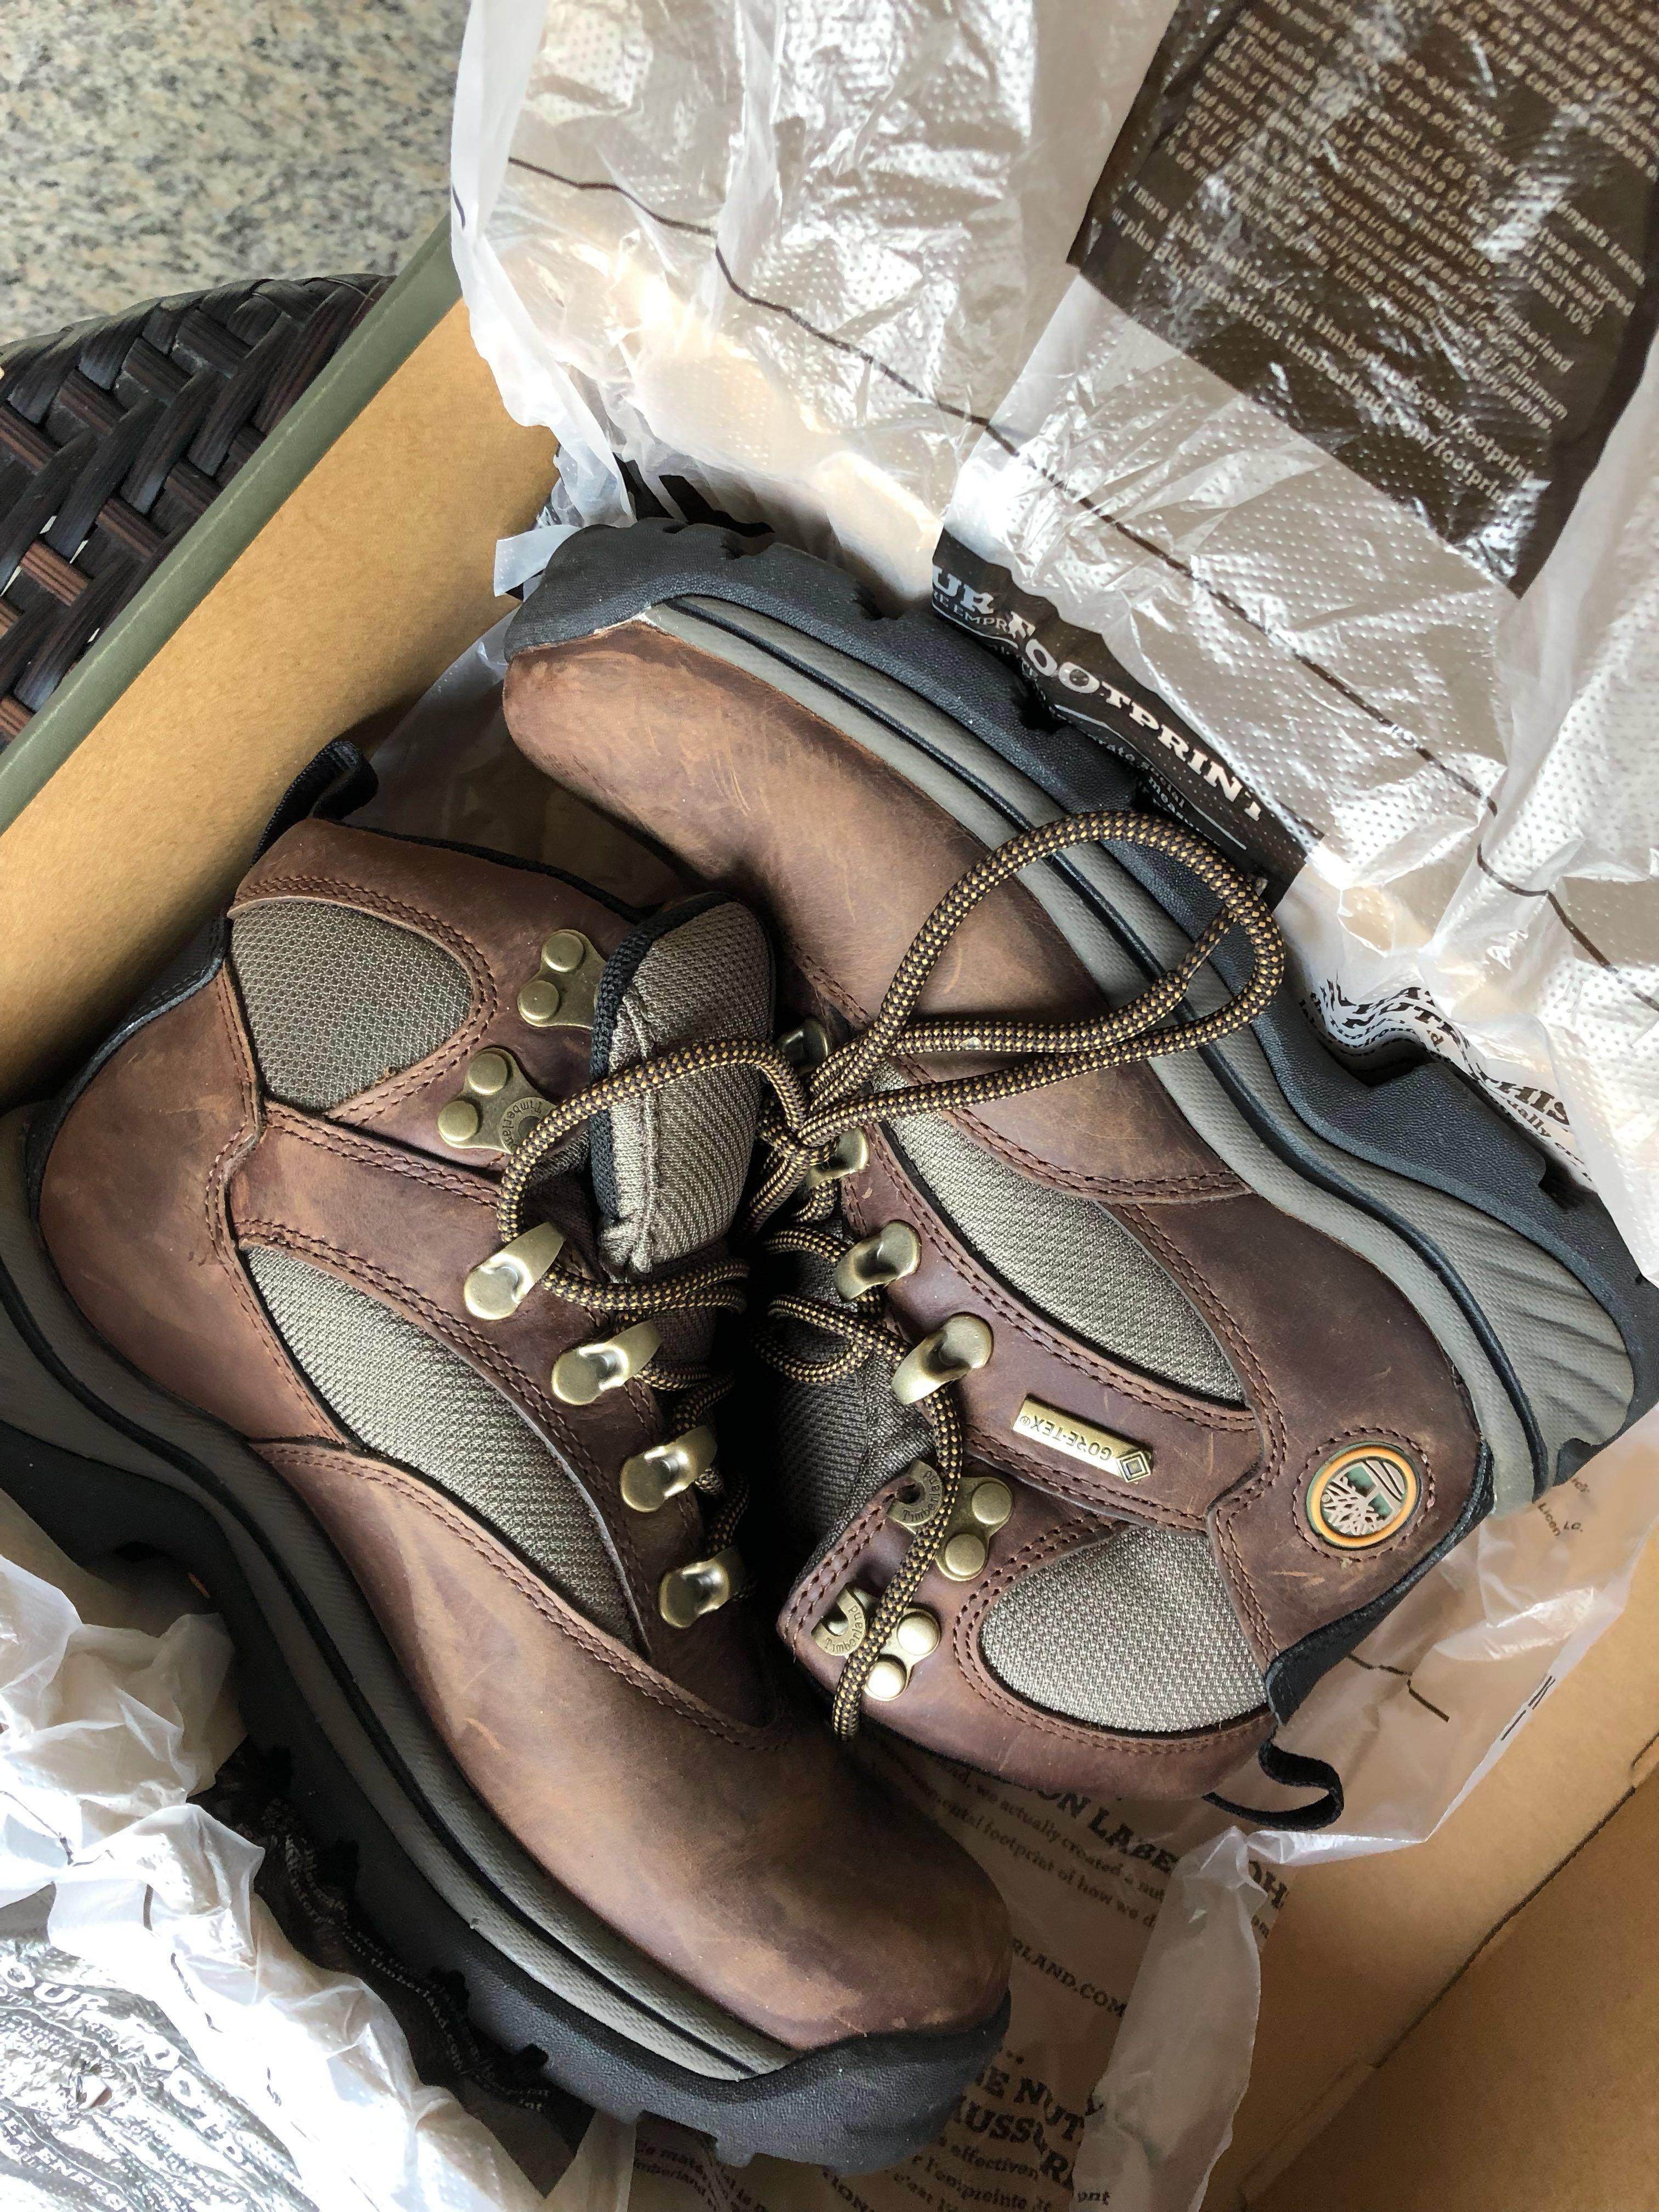 timberland chocorua hiking boots